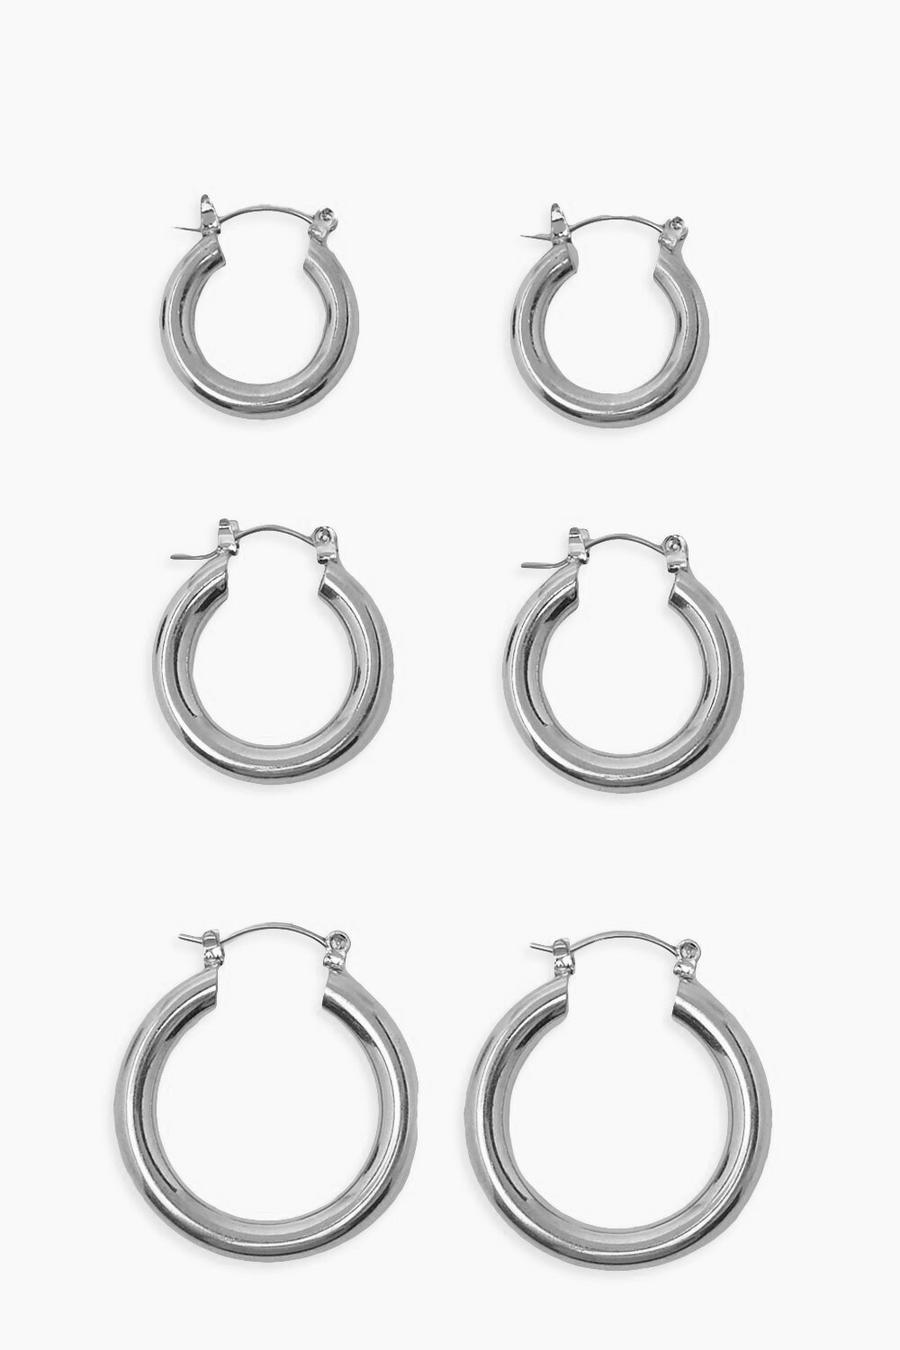 Silver Simple 3 Pack Mix Size Hoop Earrings